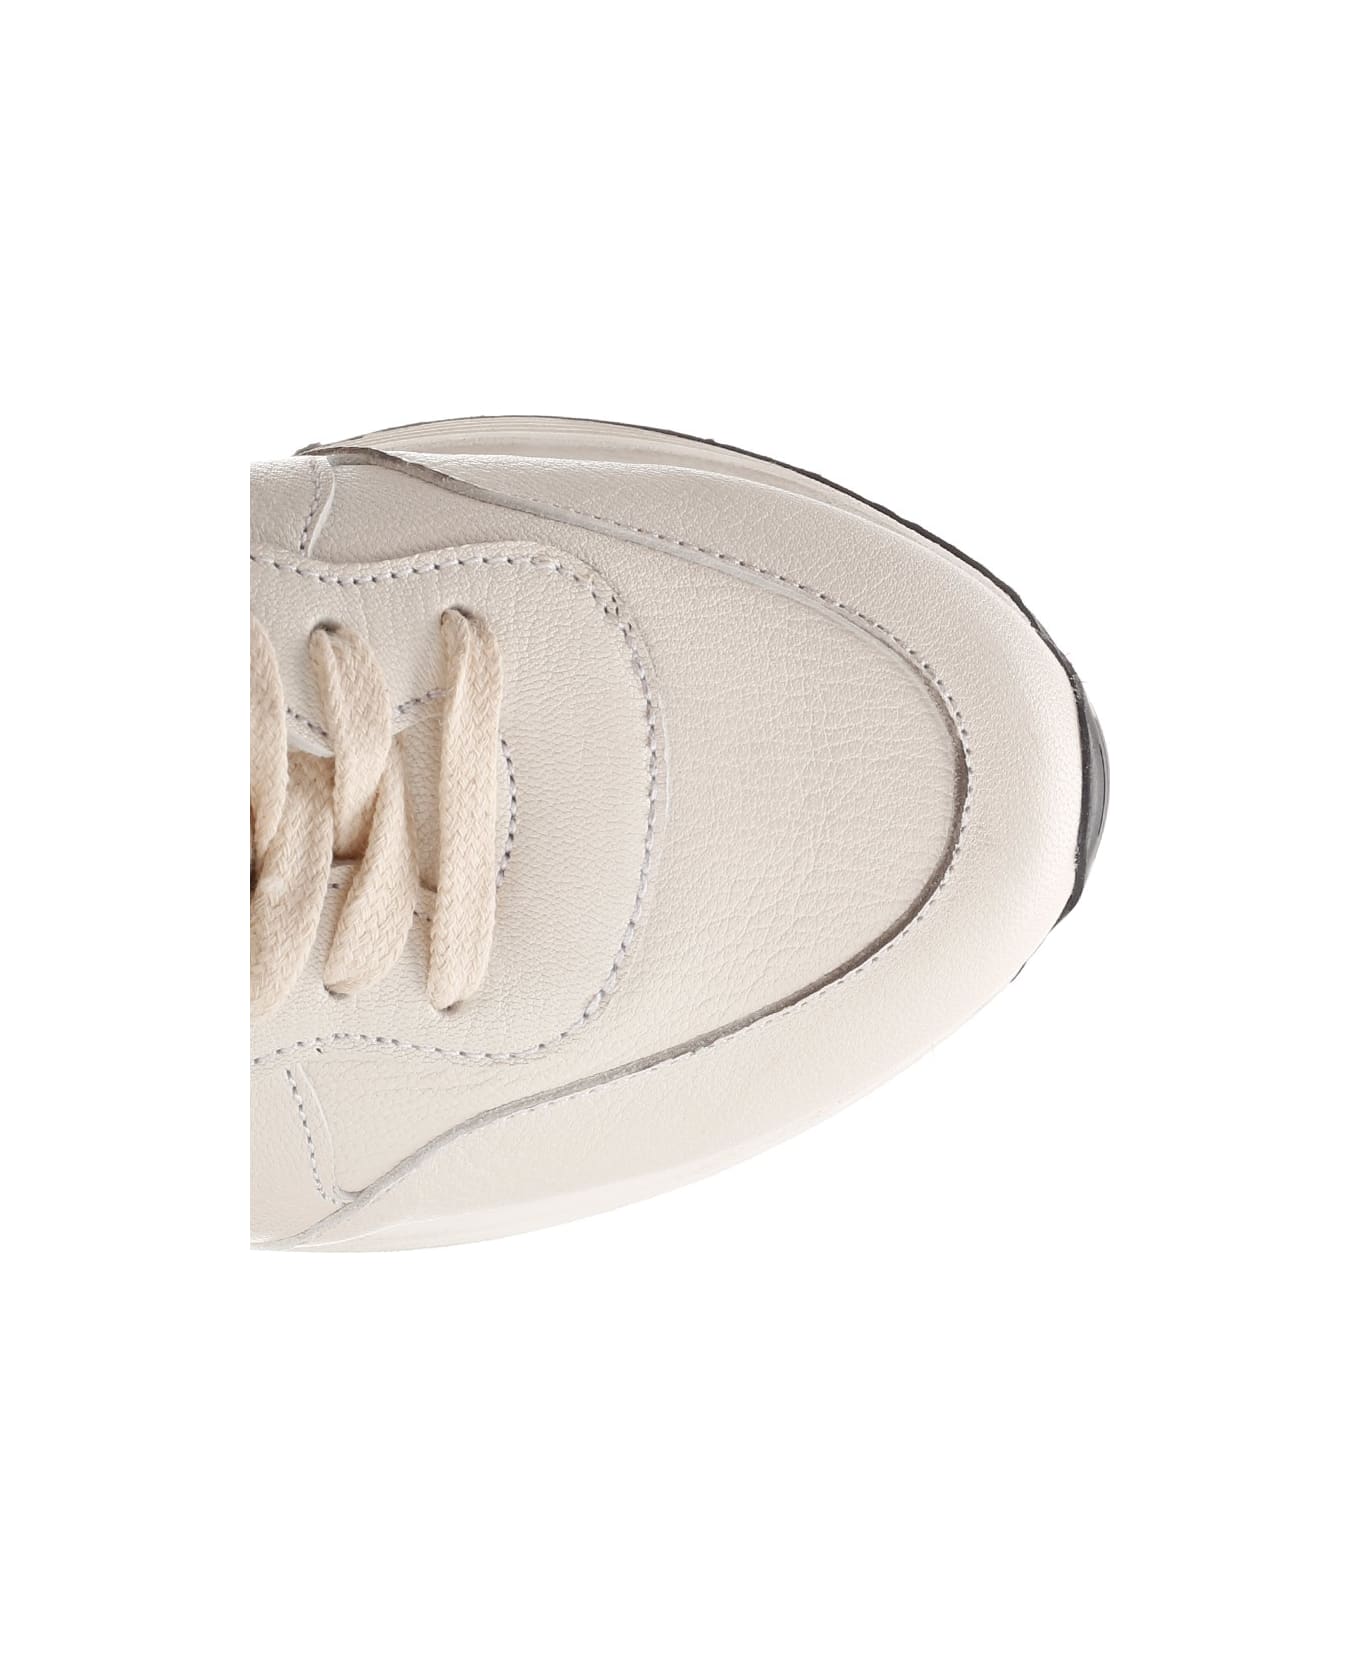 Golden Goose Running Sun Sneaker - White/taupe